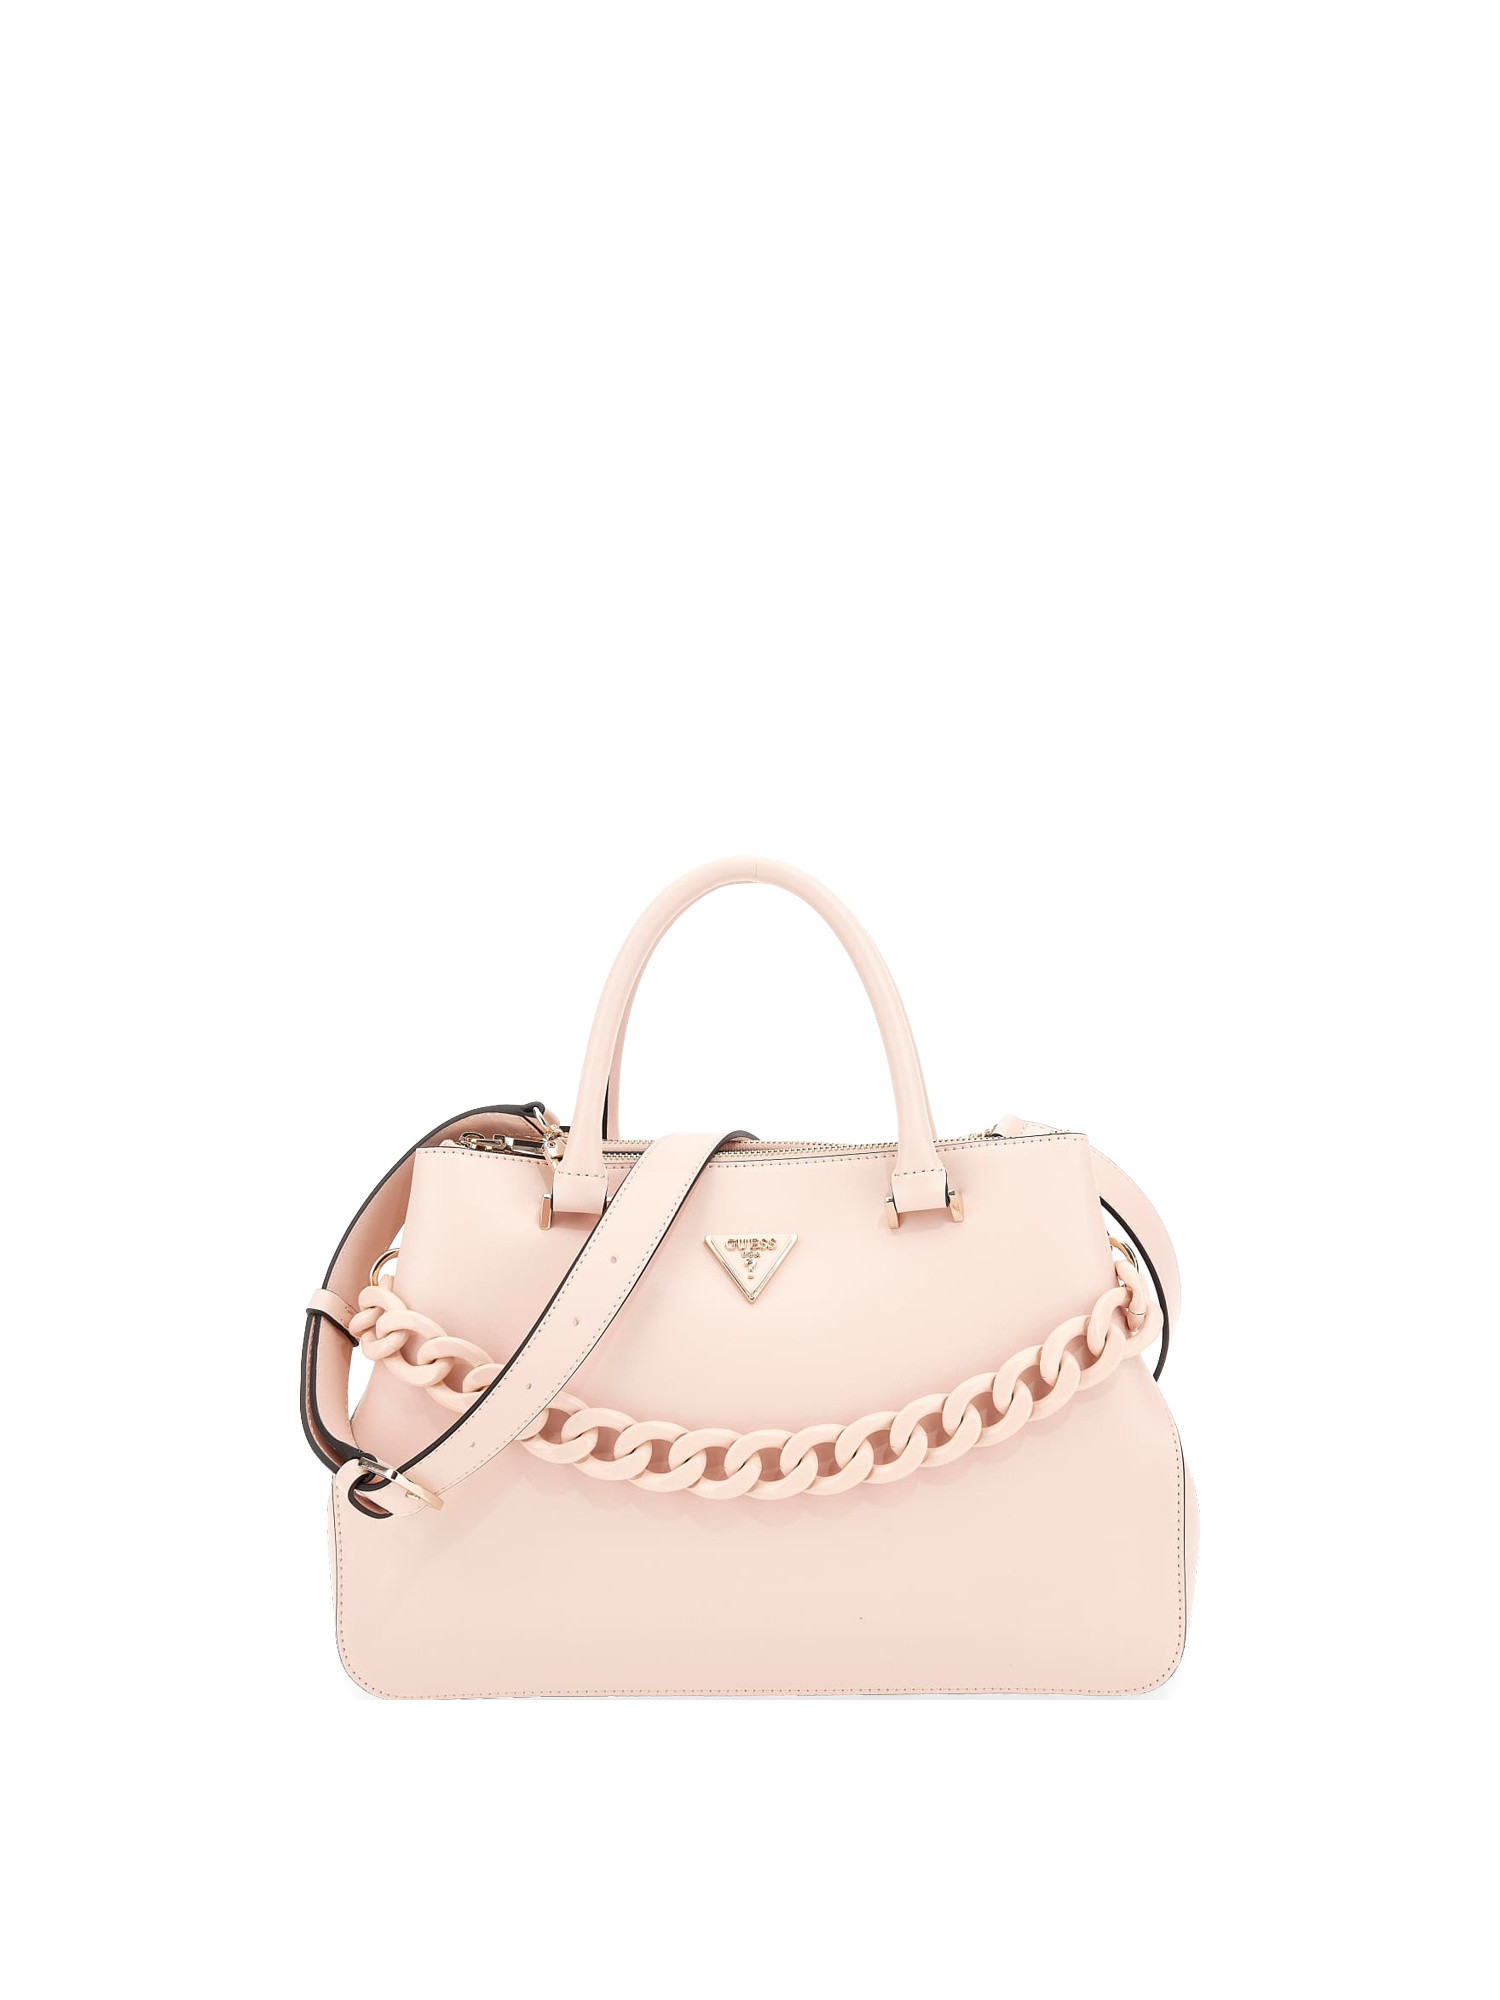 Guess - Corina handbag, Light Pink, large image number 0